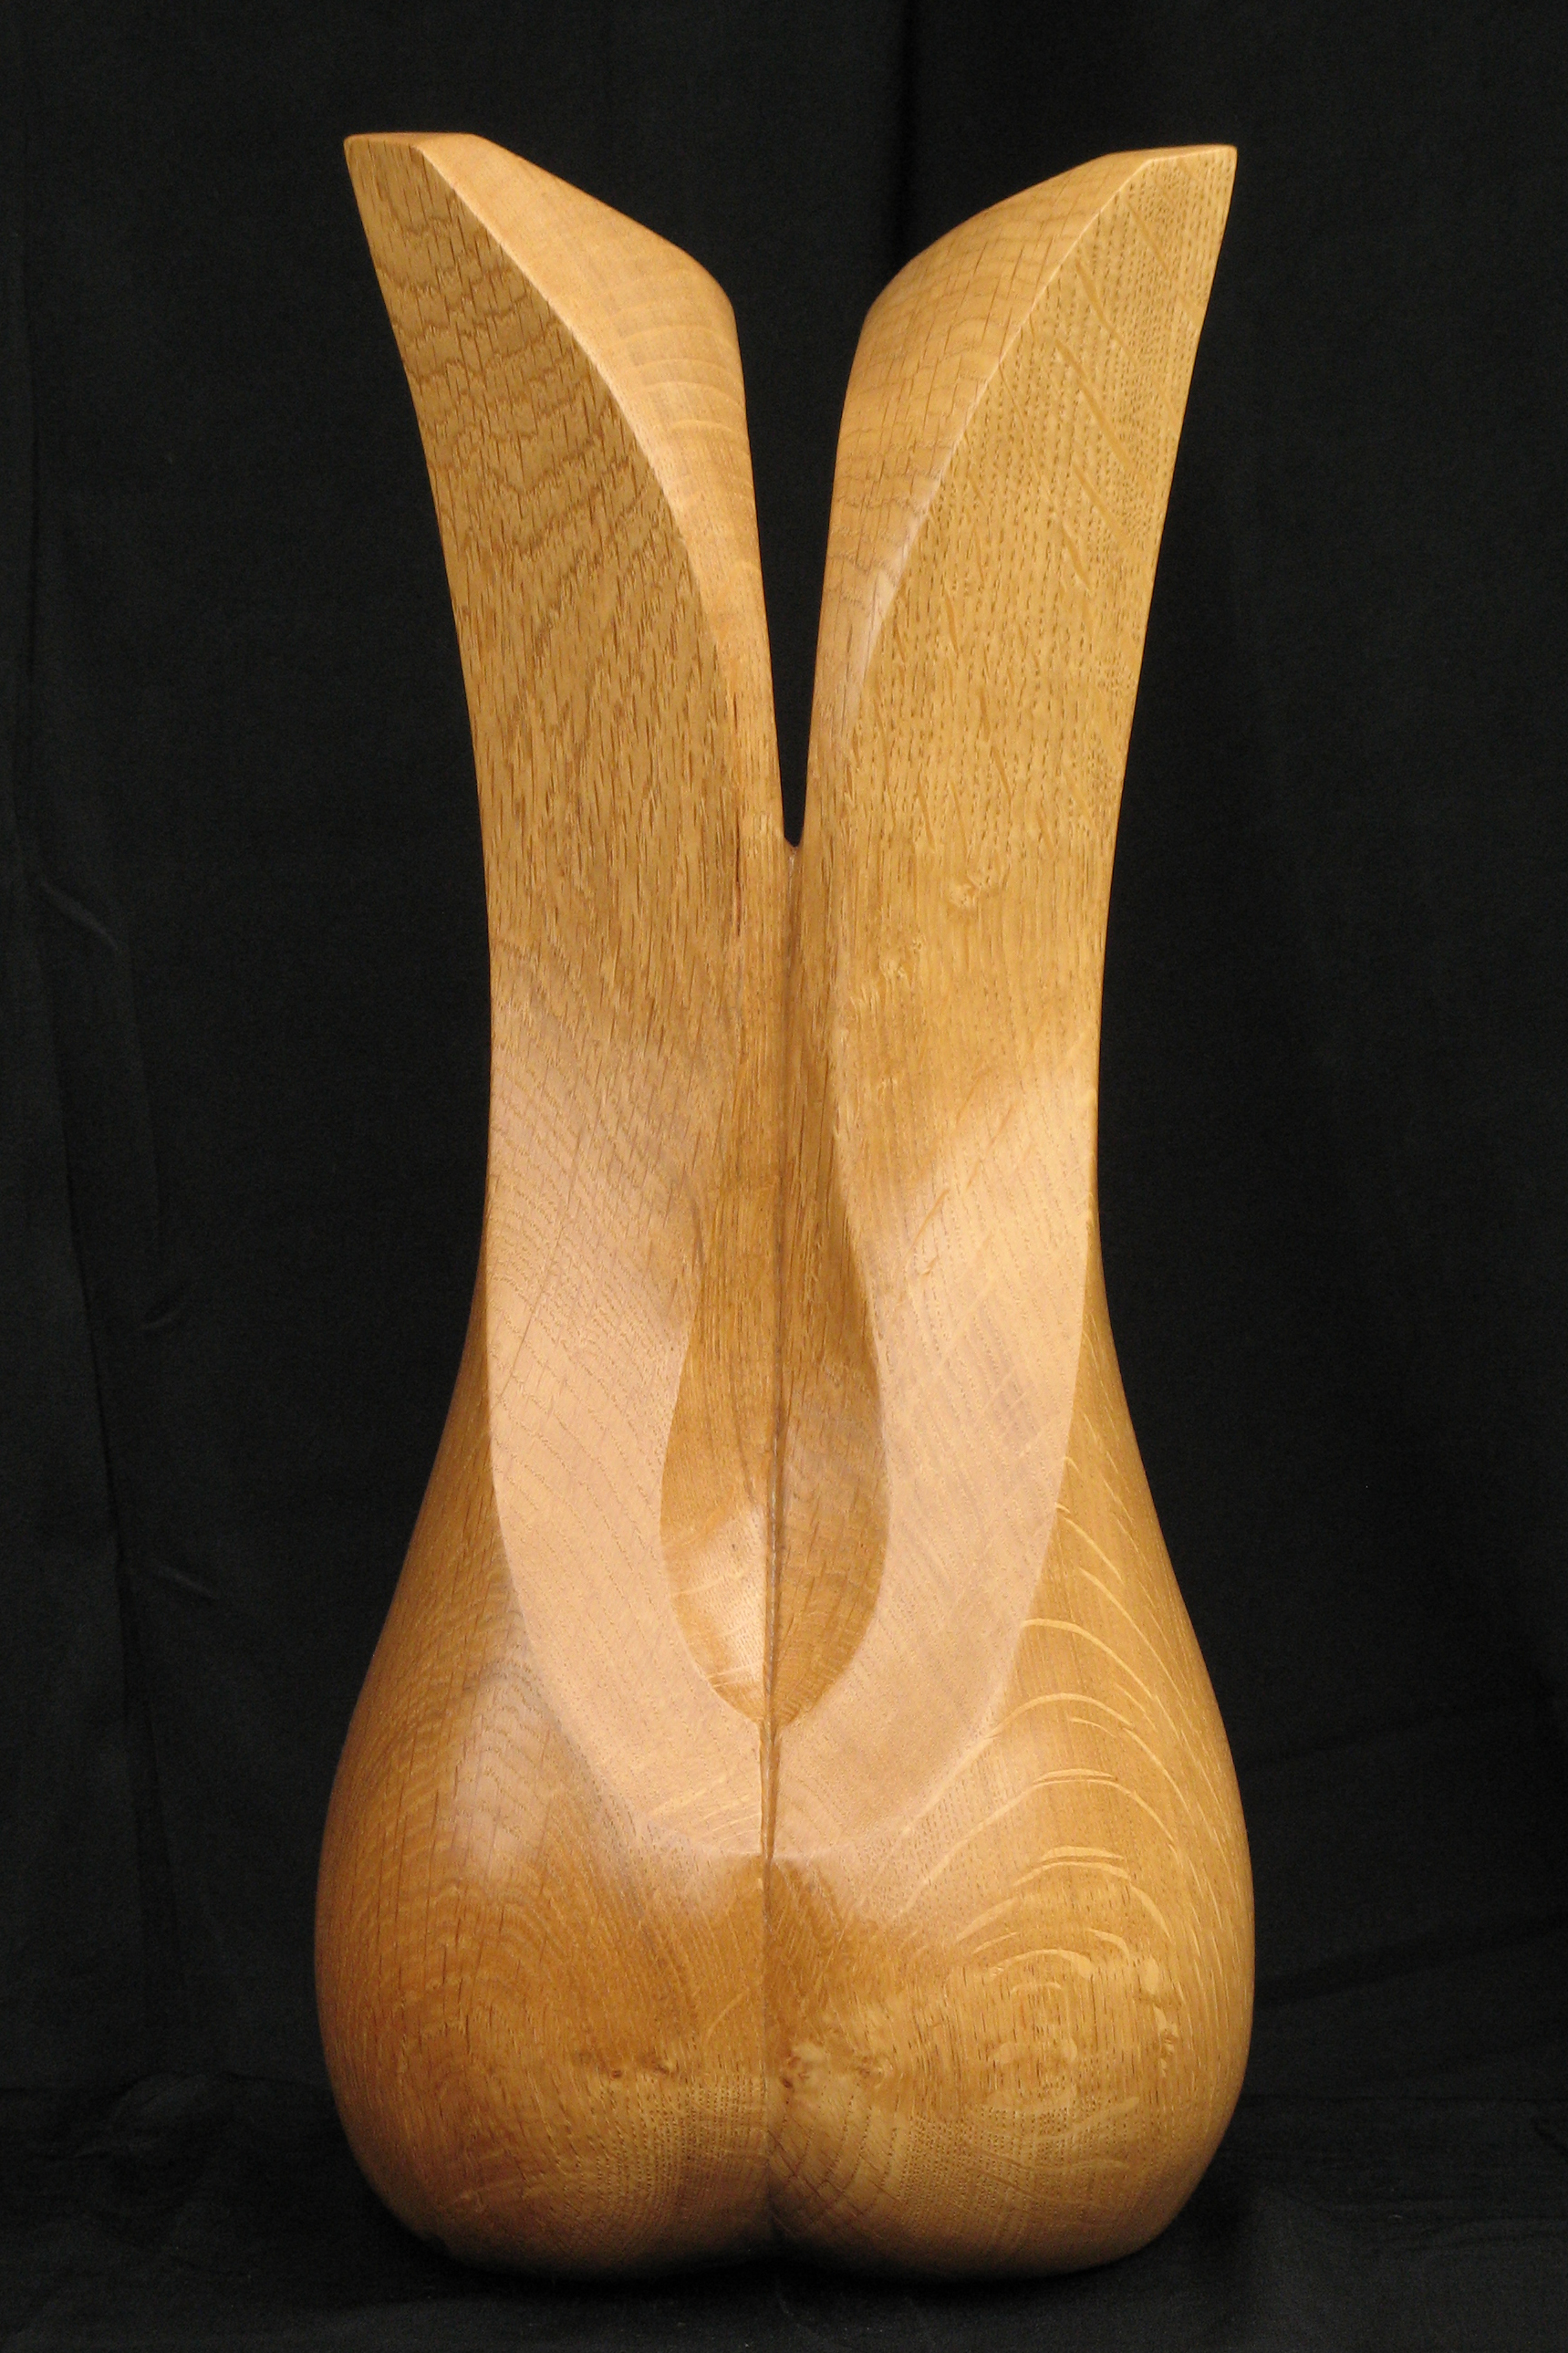 Gestileerde Torso #2, beeld van hout, vrouwelijke torso, achterzijde